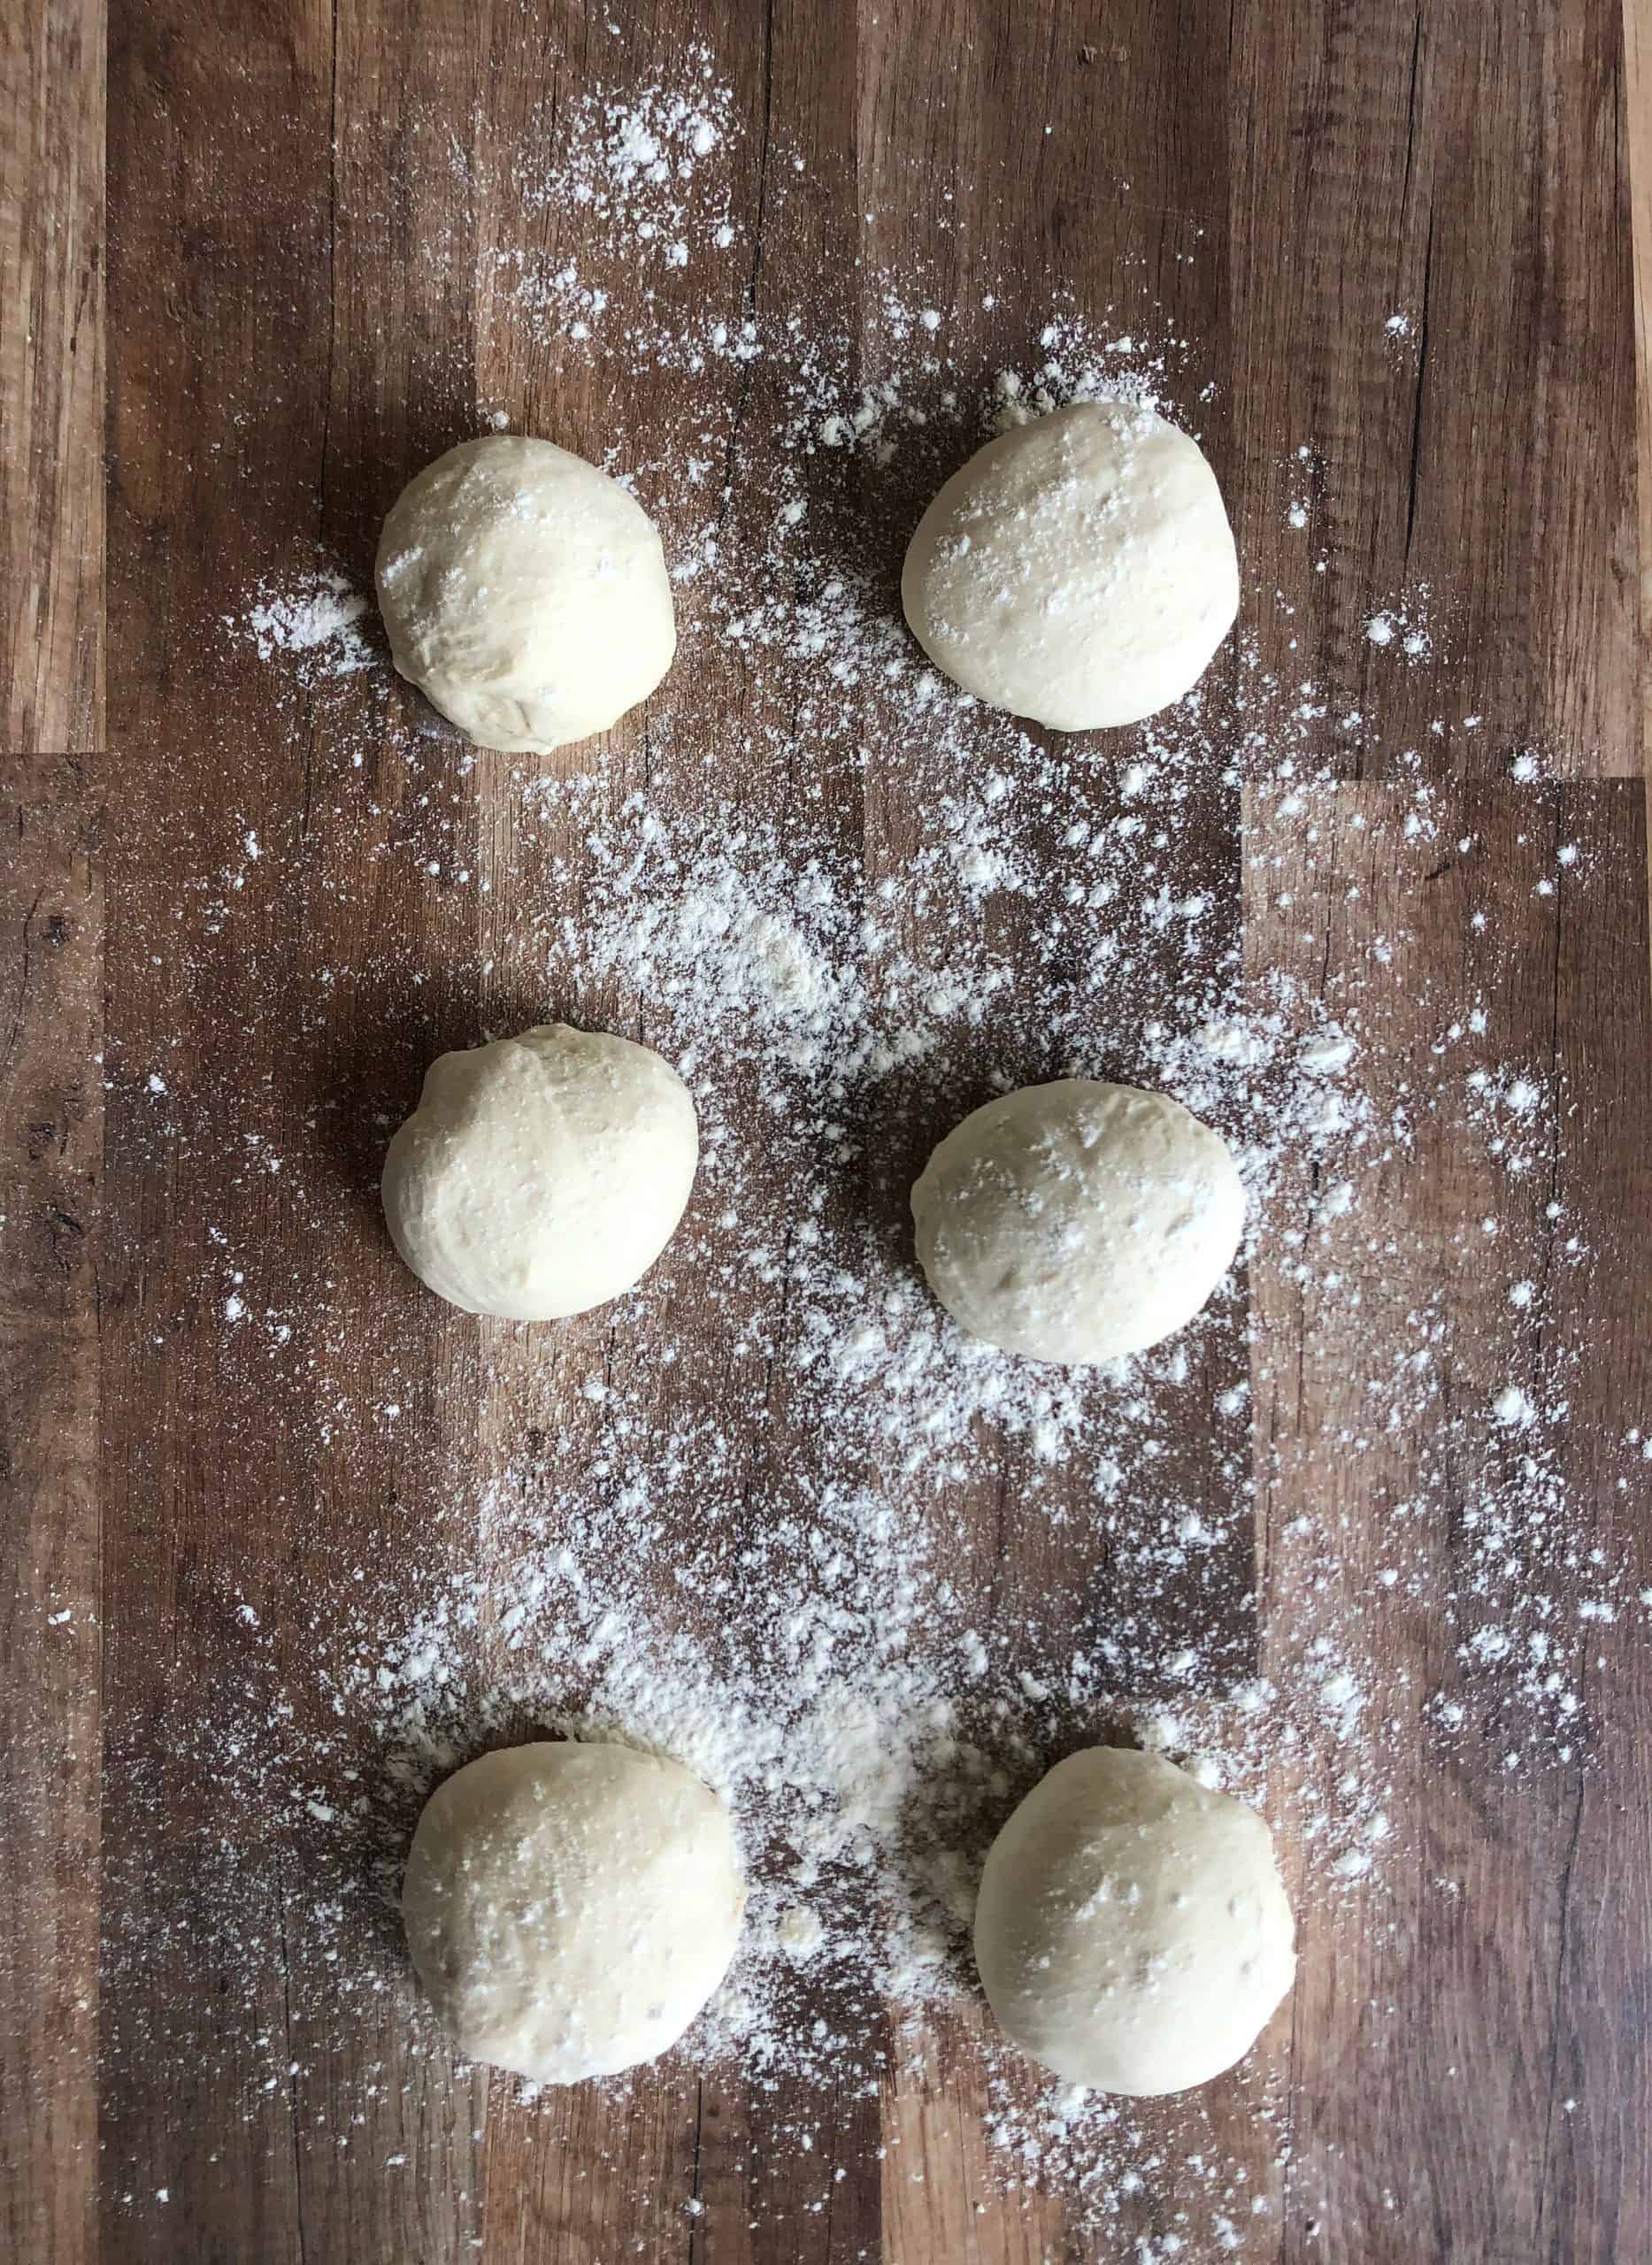 Greek Pita bread dough balls